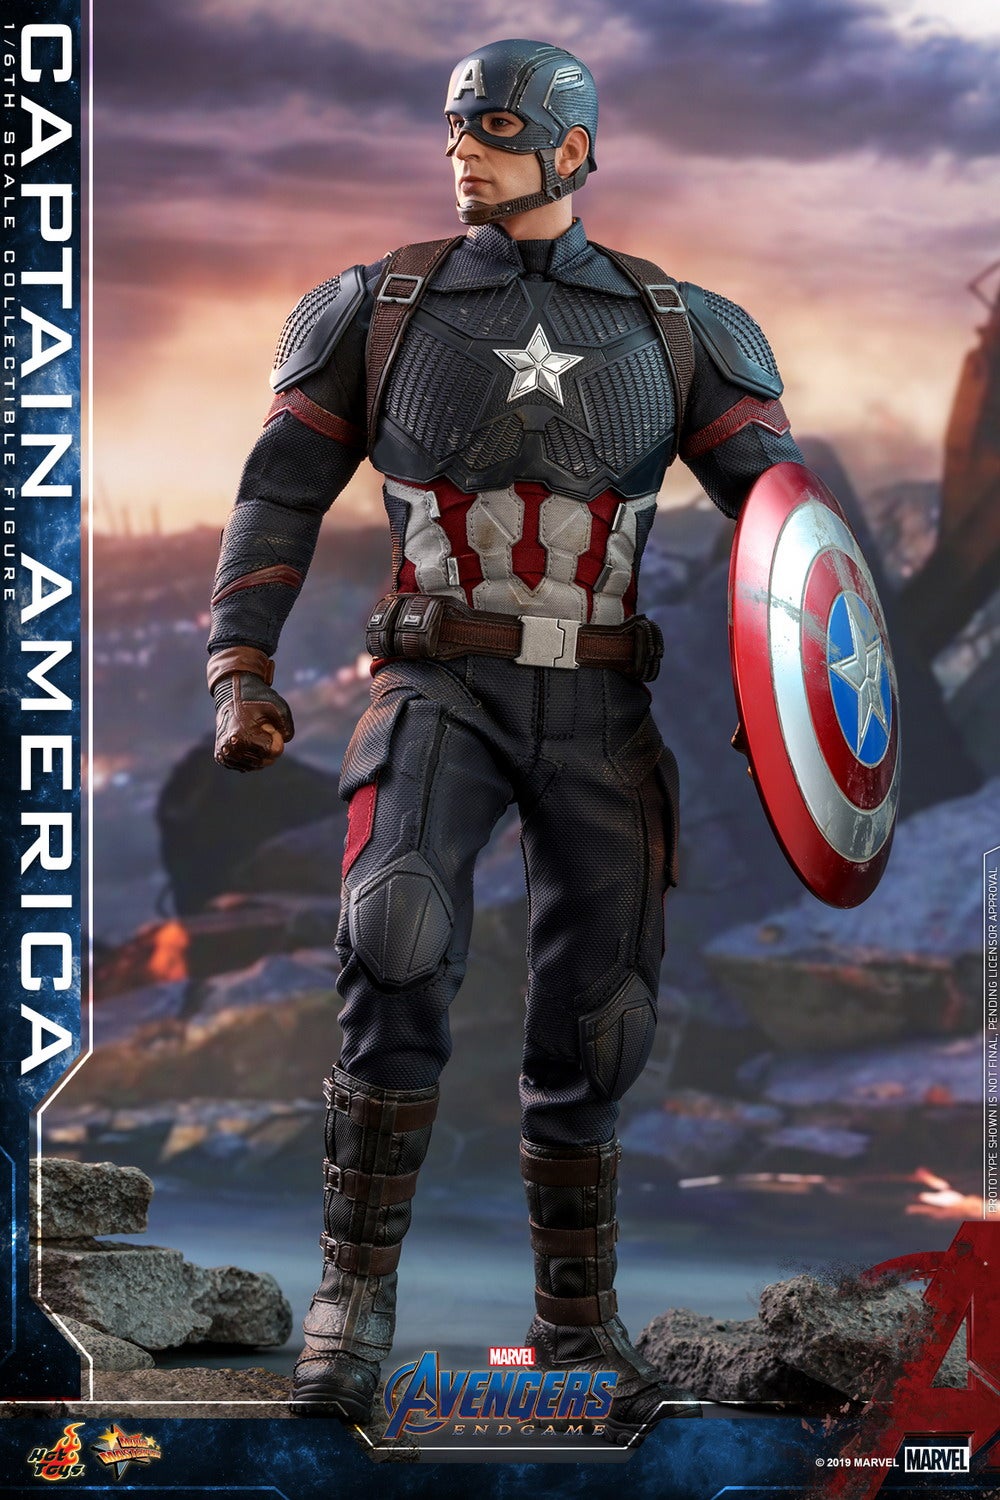 Hot Toys Marvel Avengers: Endgame 1/6 Captain America | Figures.com